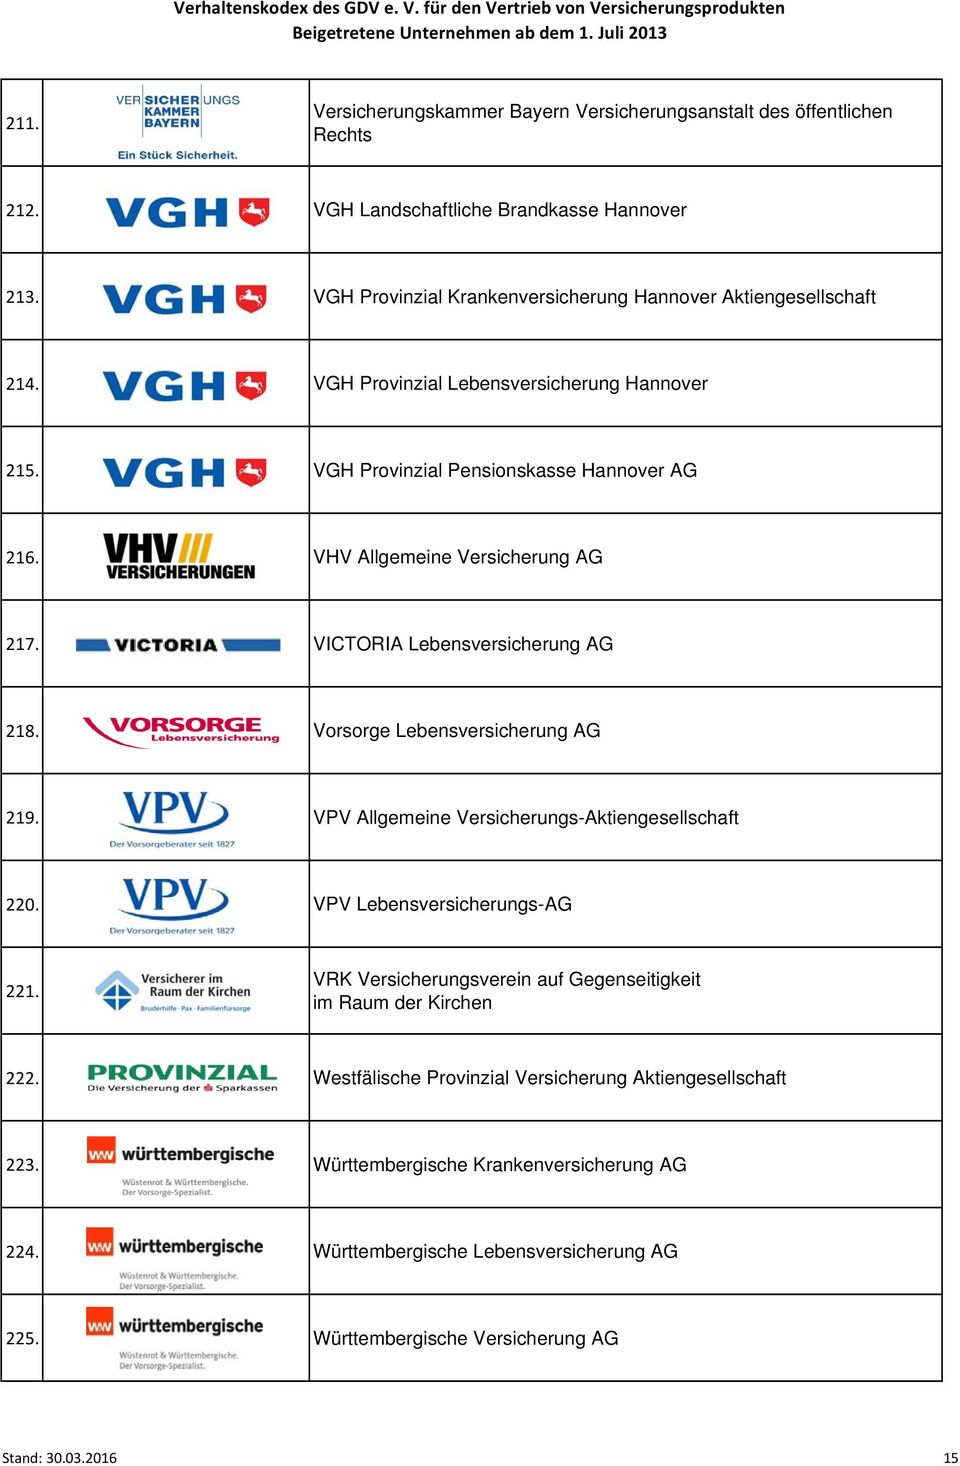 VHV Allgemeine Versicherung AG 217. VICTORIA Lebensversicherung AG 218. Vorsorge Lebensversicherung AG 219. VPV Allgemeine Versicherungs-Aktiengesellschaft 220.